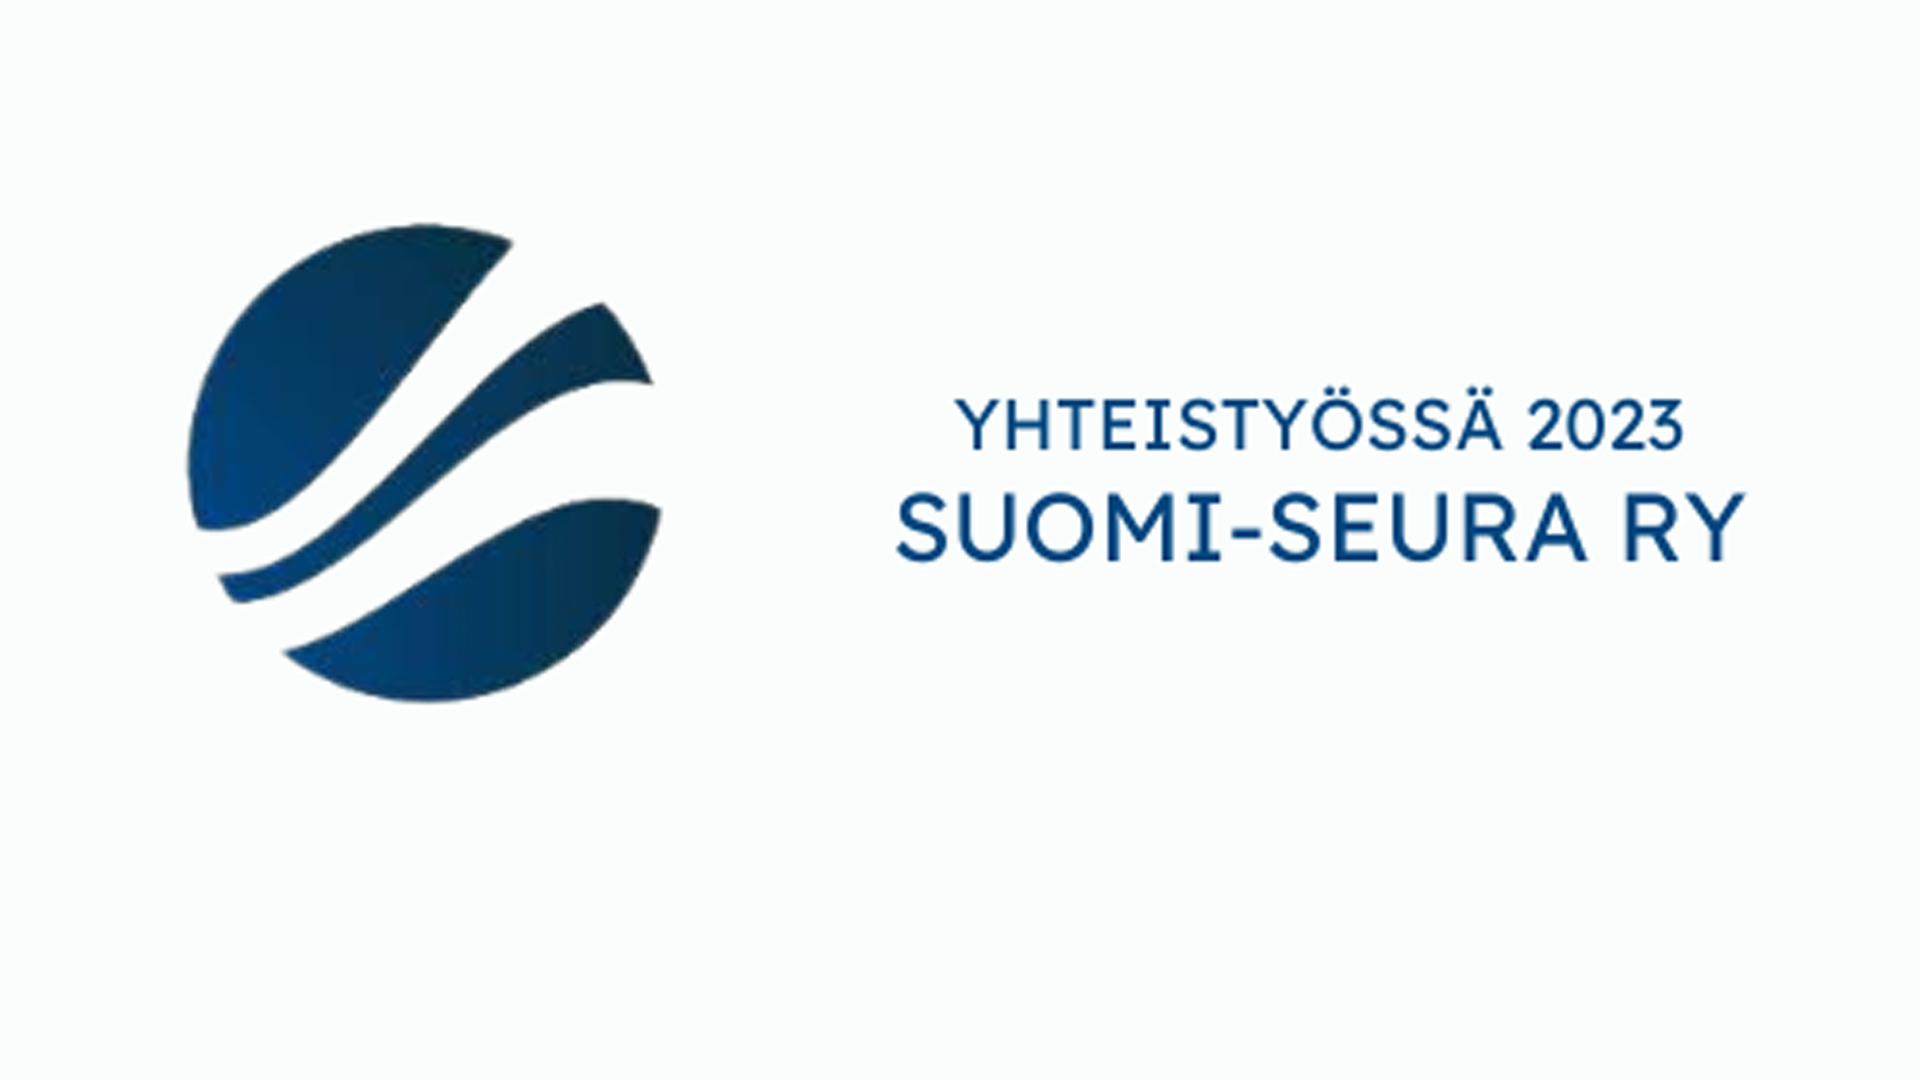 Suomi-seuran logo, teksti Yhteistyössä